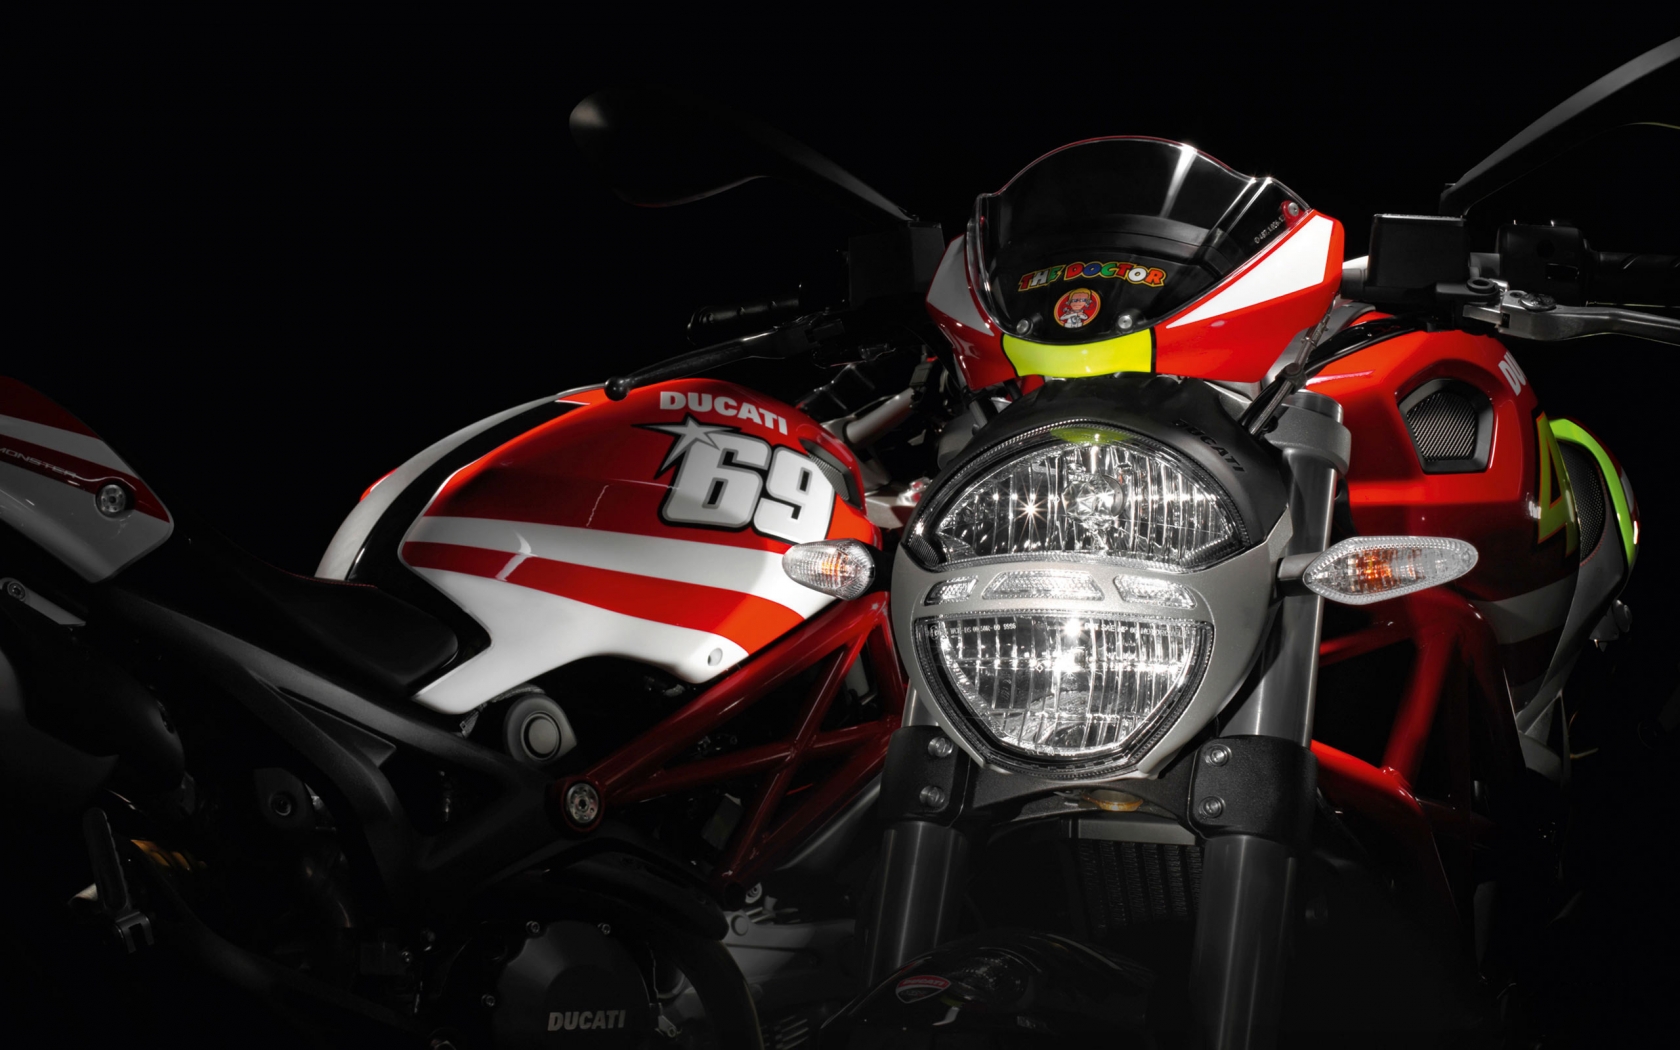 Ducati Rossi and Hayden Replica Ducati for 1680 x 1050 widescreen resolution